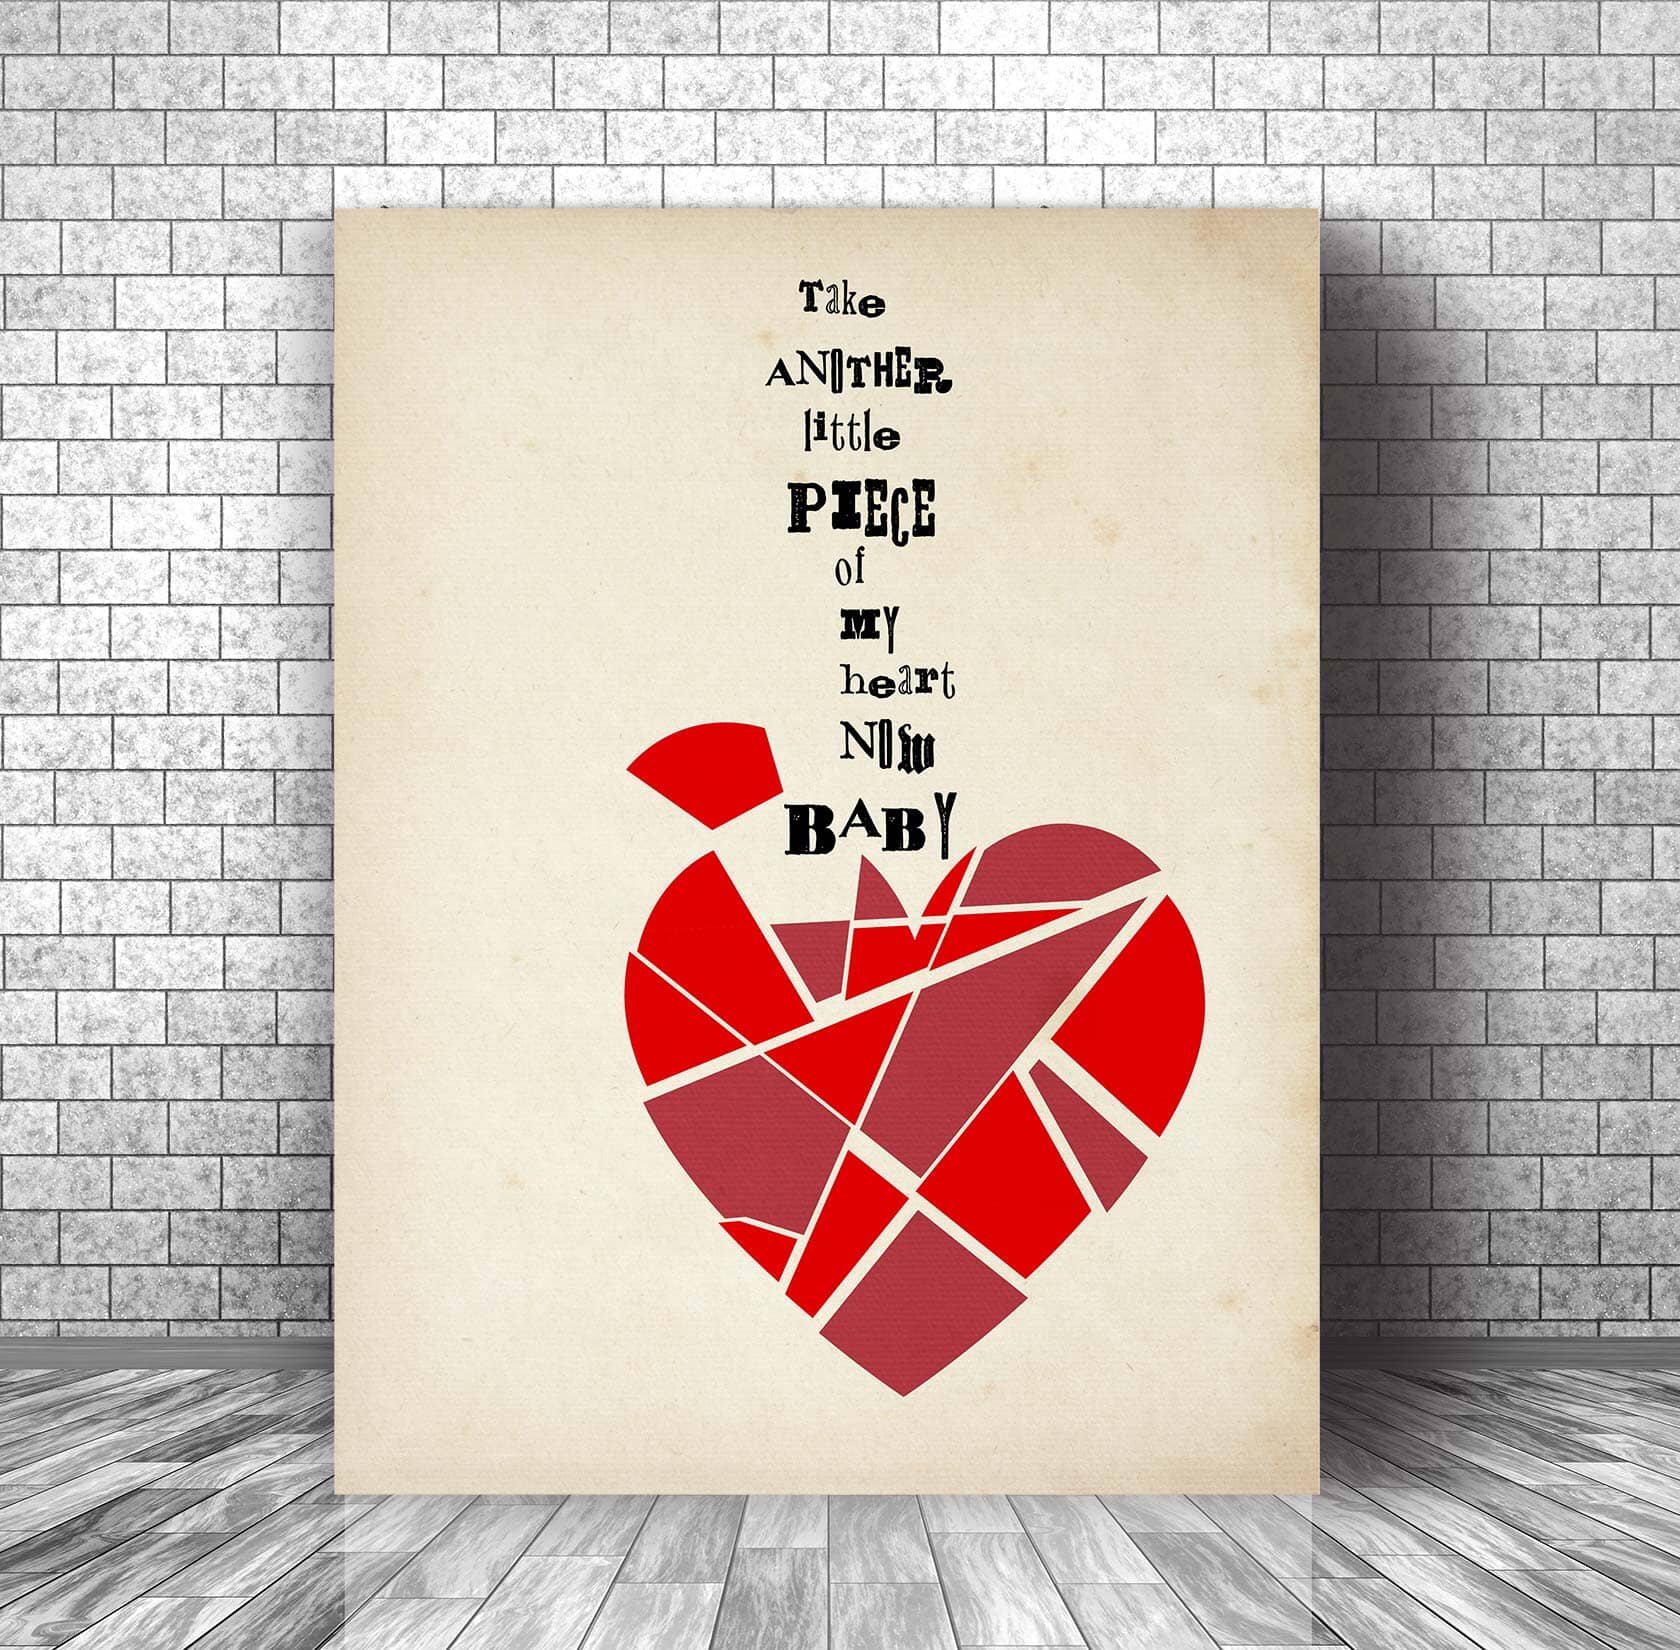 Little Piece of My Heart by Janis Joplin - Song Lyric Decor Song Lyrics Art Song Lyrics Art 11x14 Canvas Wrap 